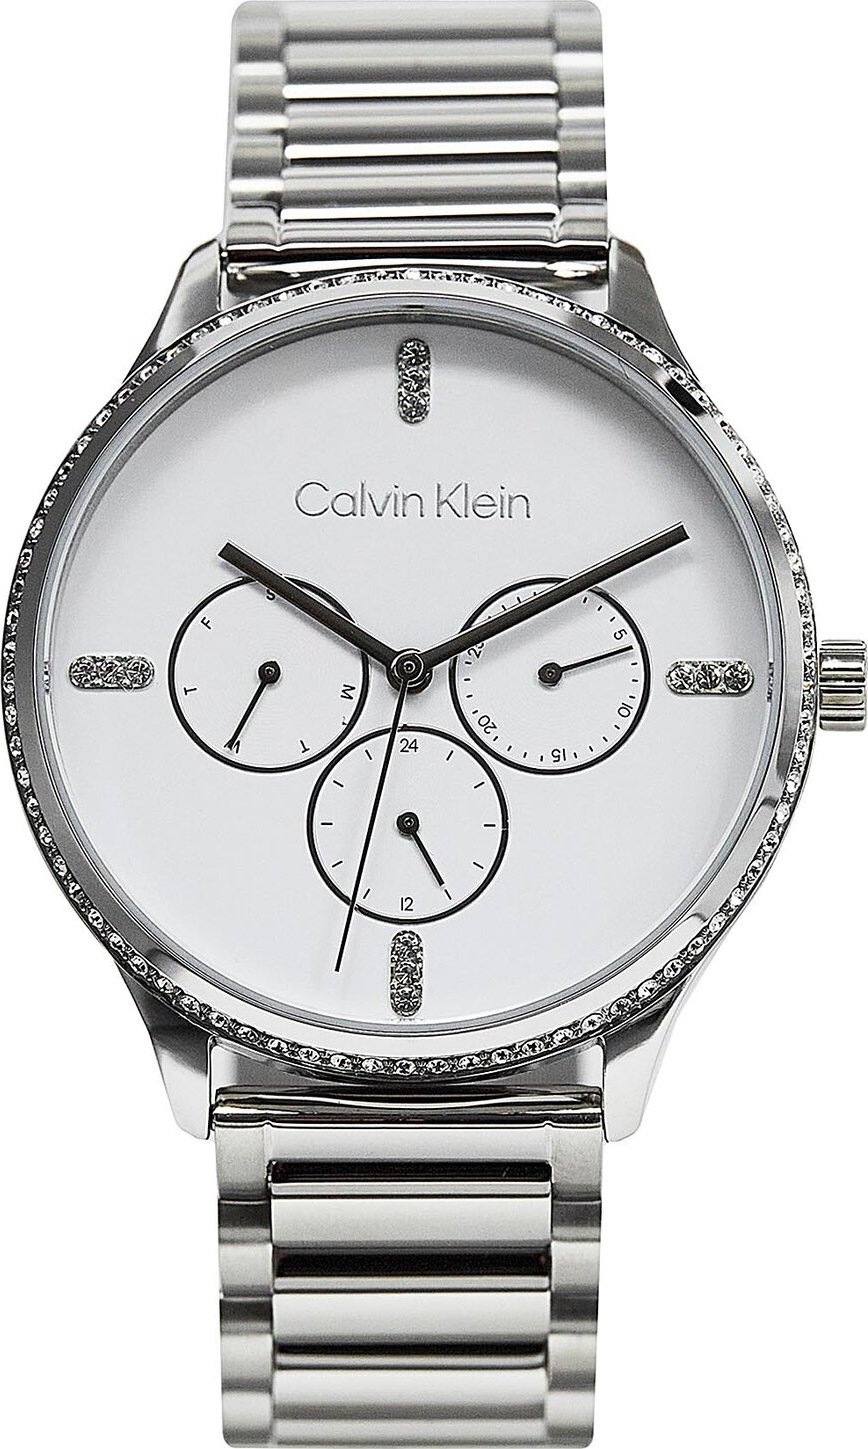 Hodinky Calvin Klein Dress 25200373 Silver/White